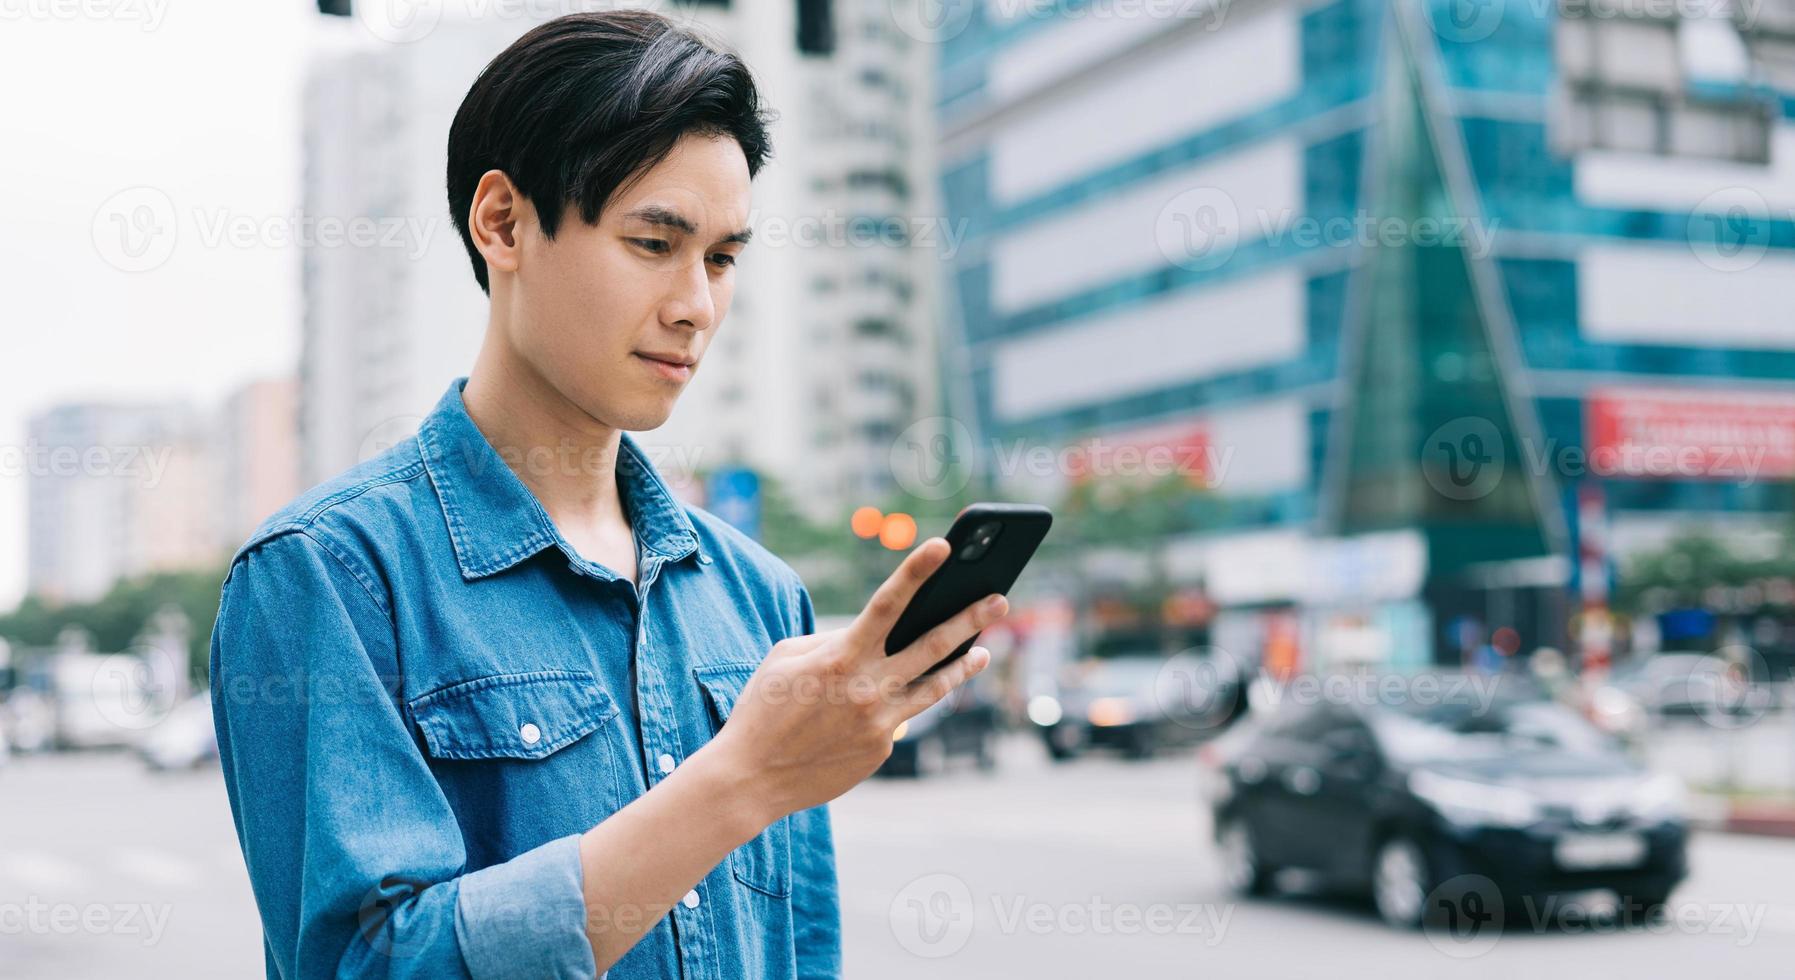 jovem asiático andando e usando smartphone na rua foto